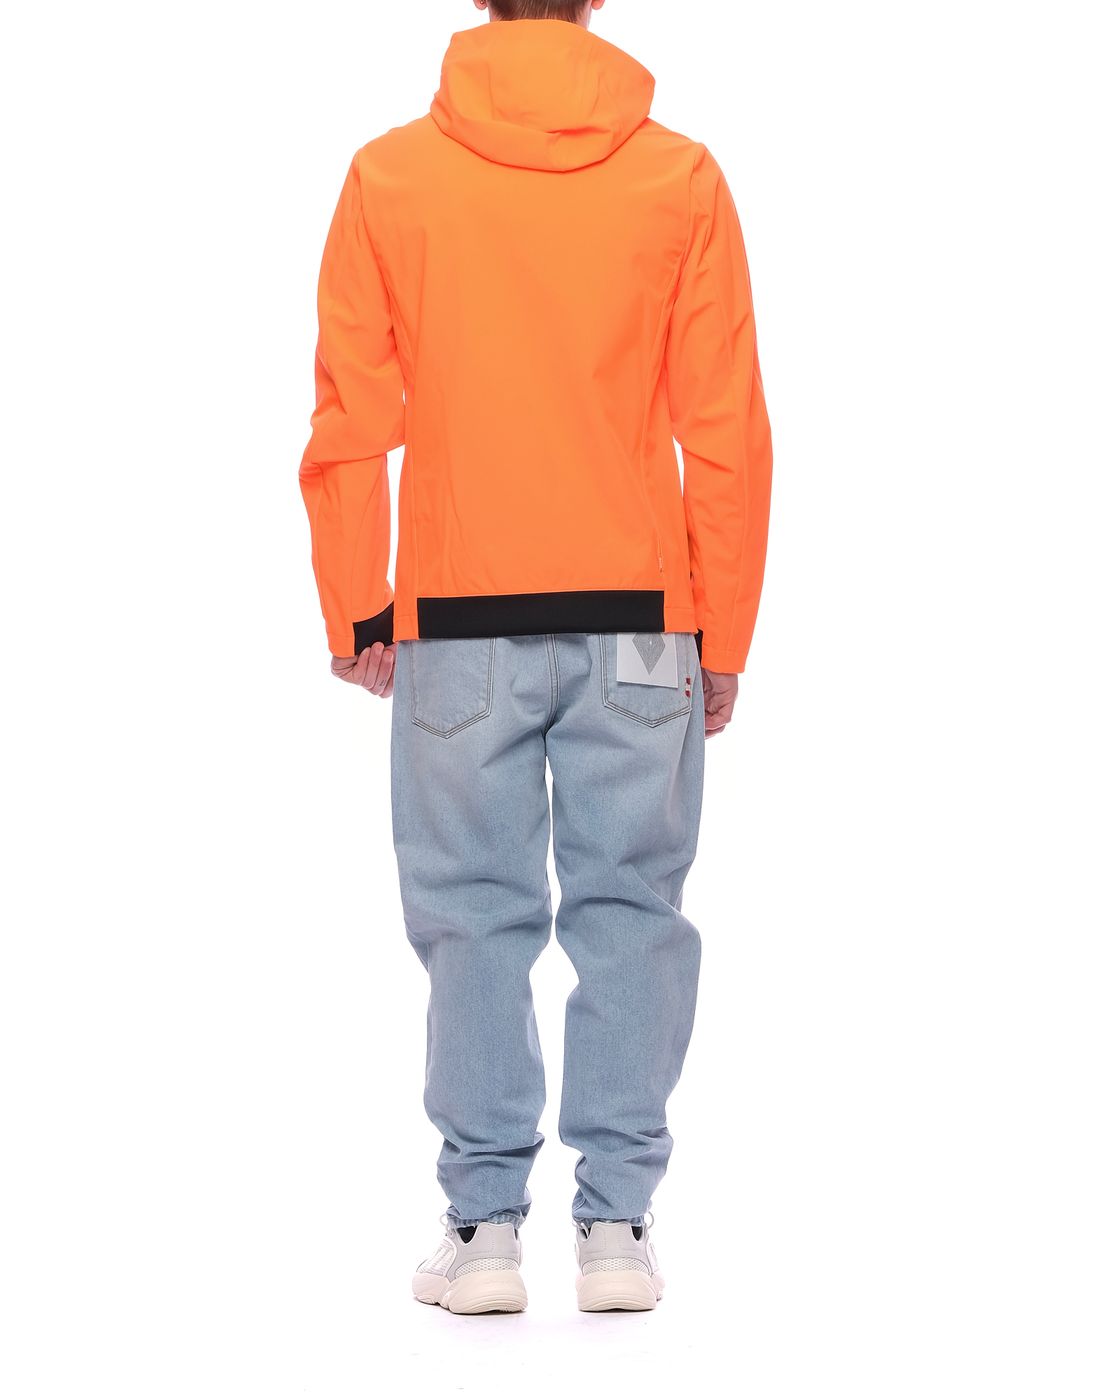 남자 GBS01003을위한 재킷 u 오렌지 플루오 선스